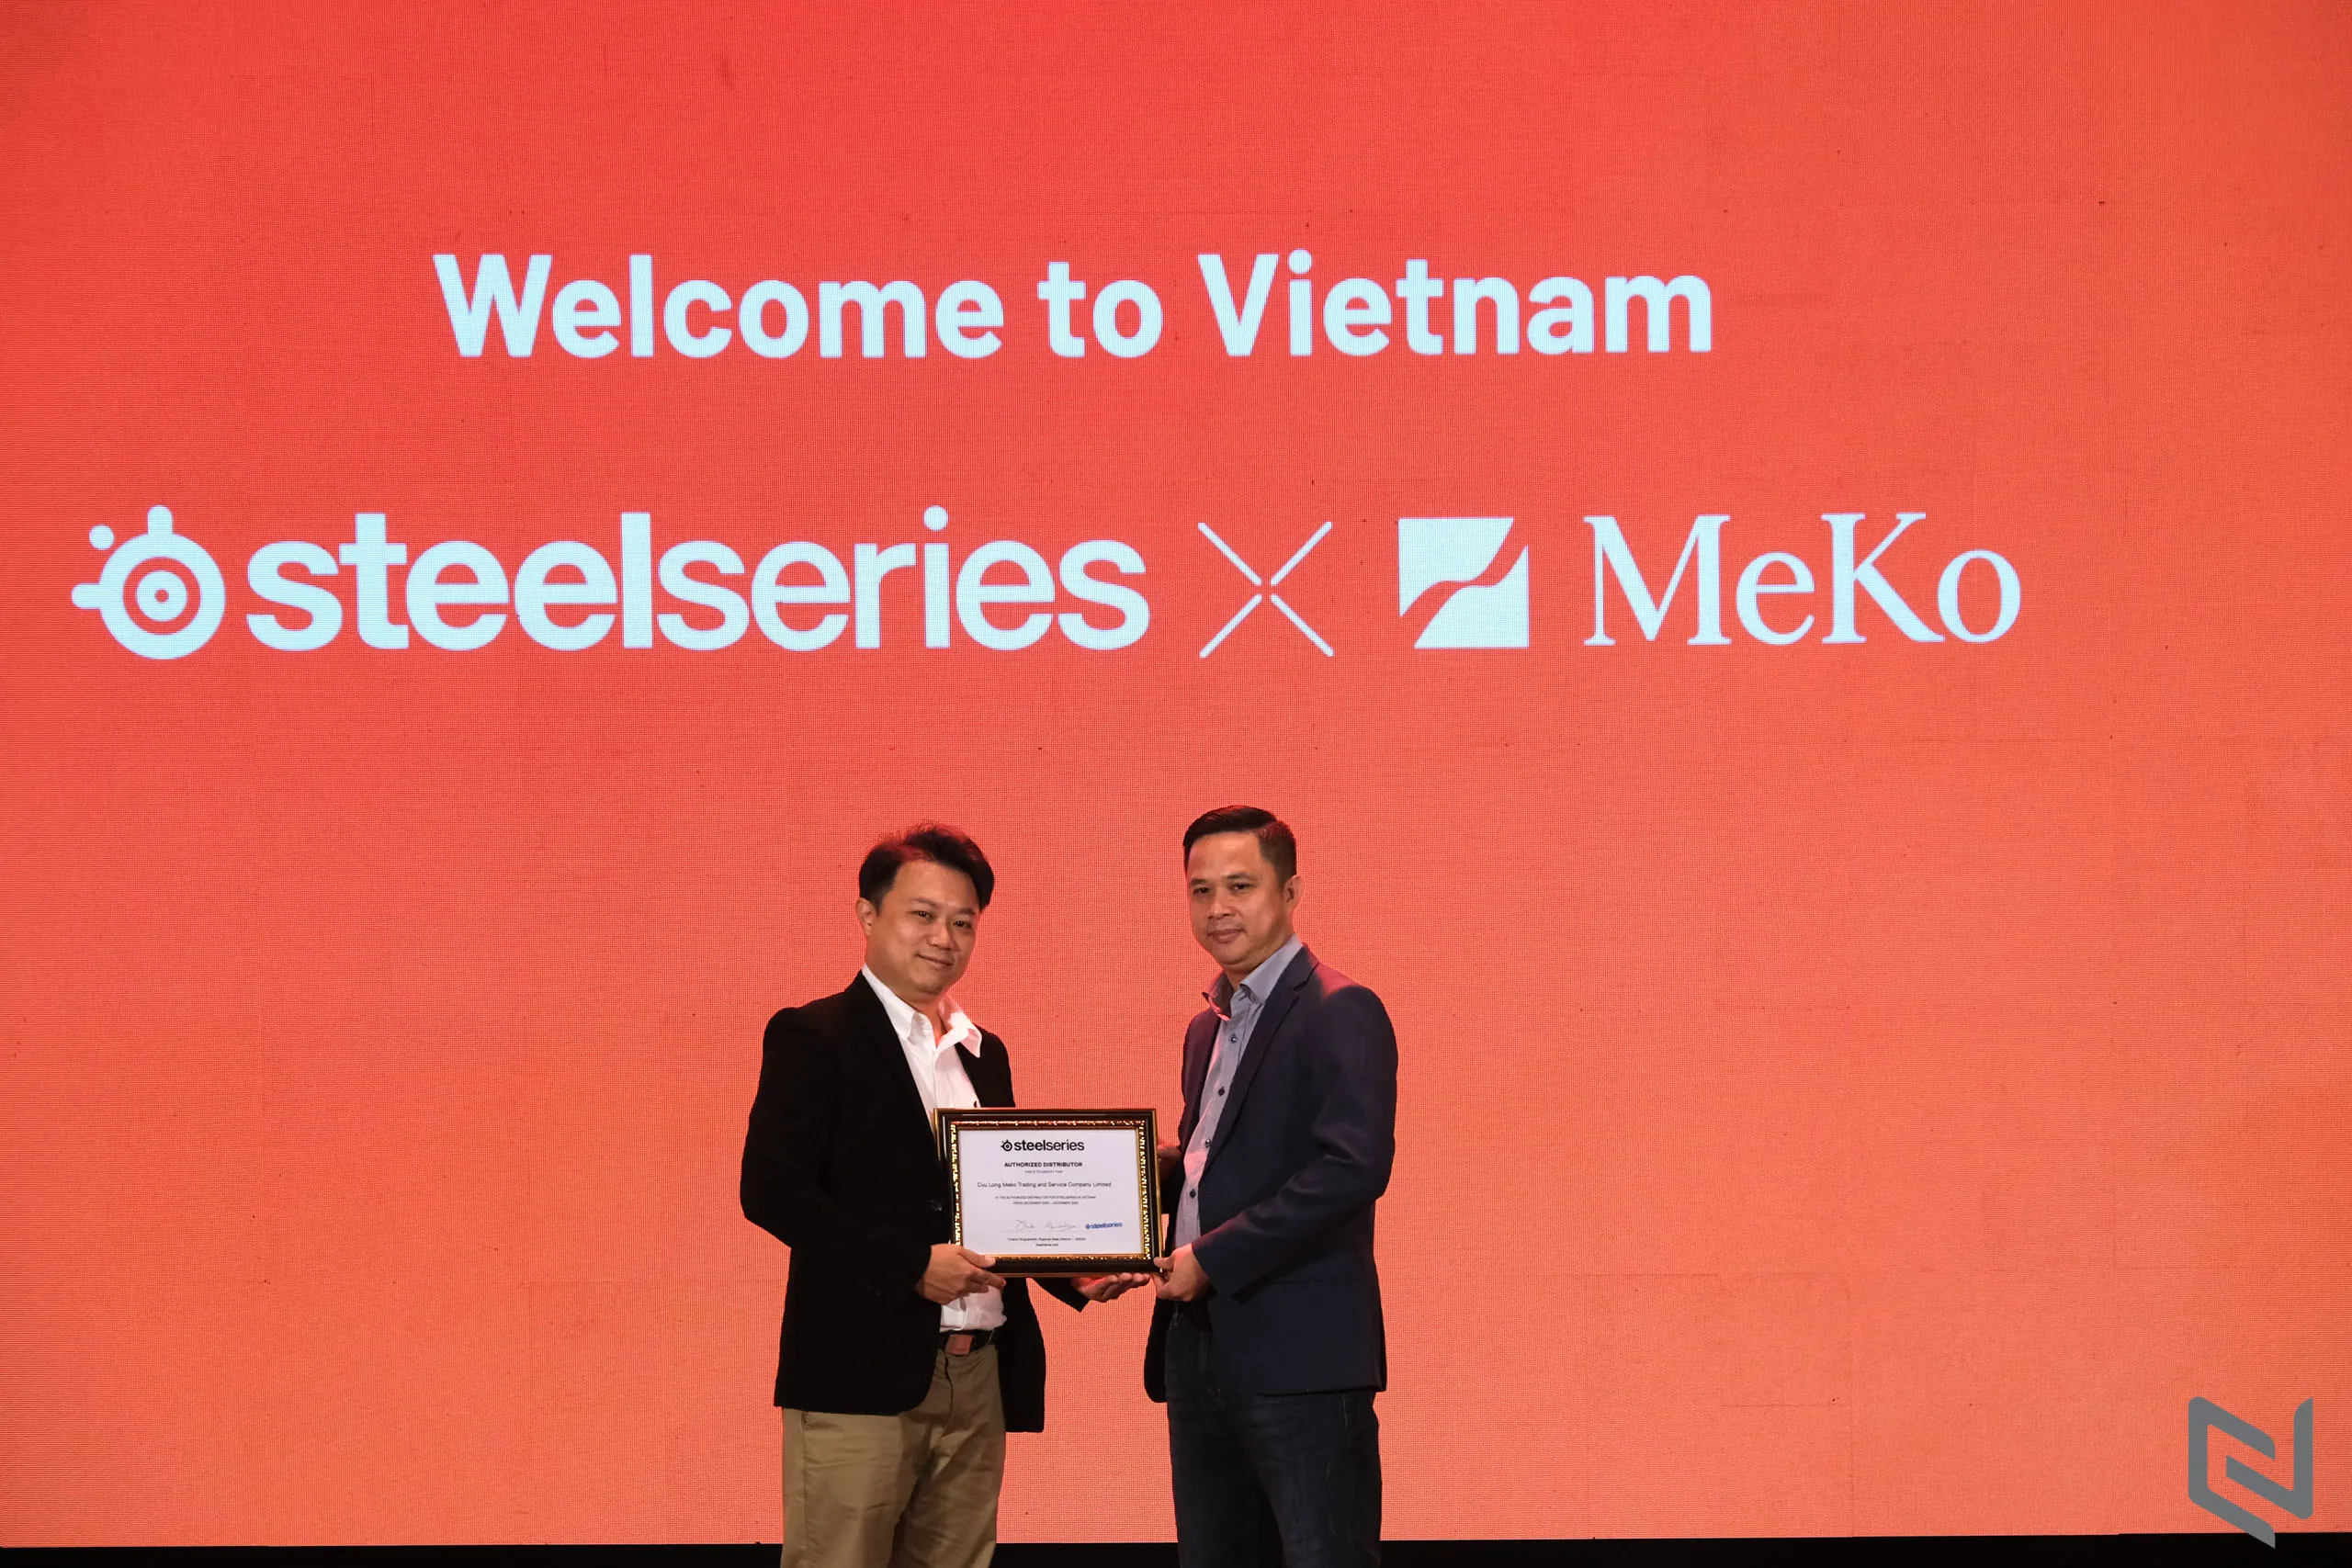 SteelSeries chính thức công bố MeKo là nhà phân phối mới duy nhất tại Việt Nam